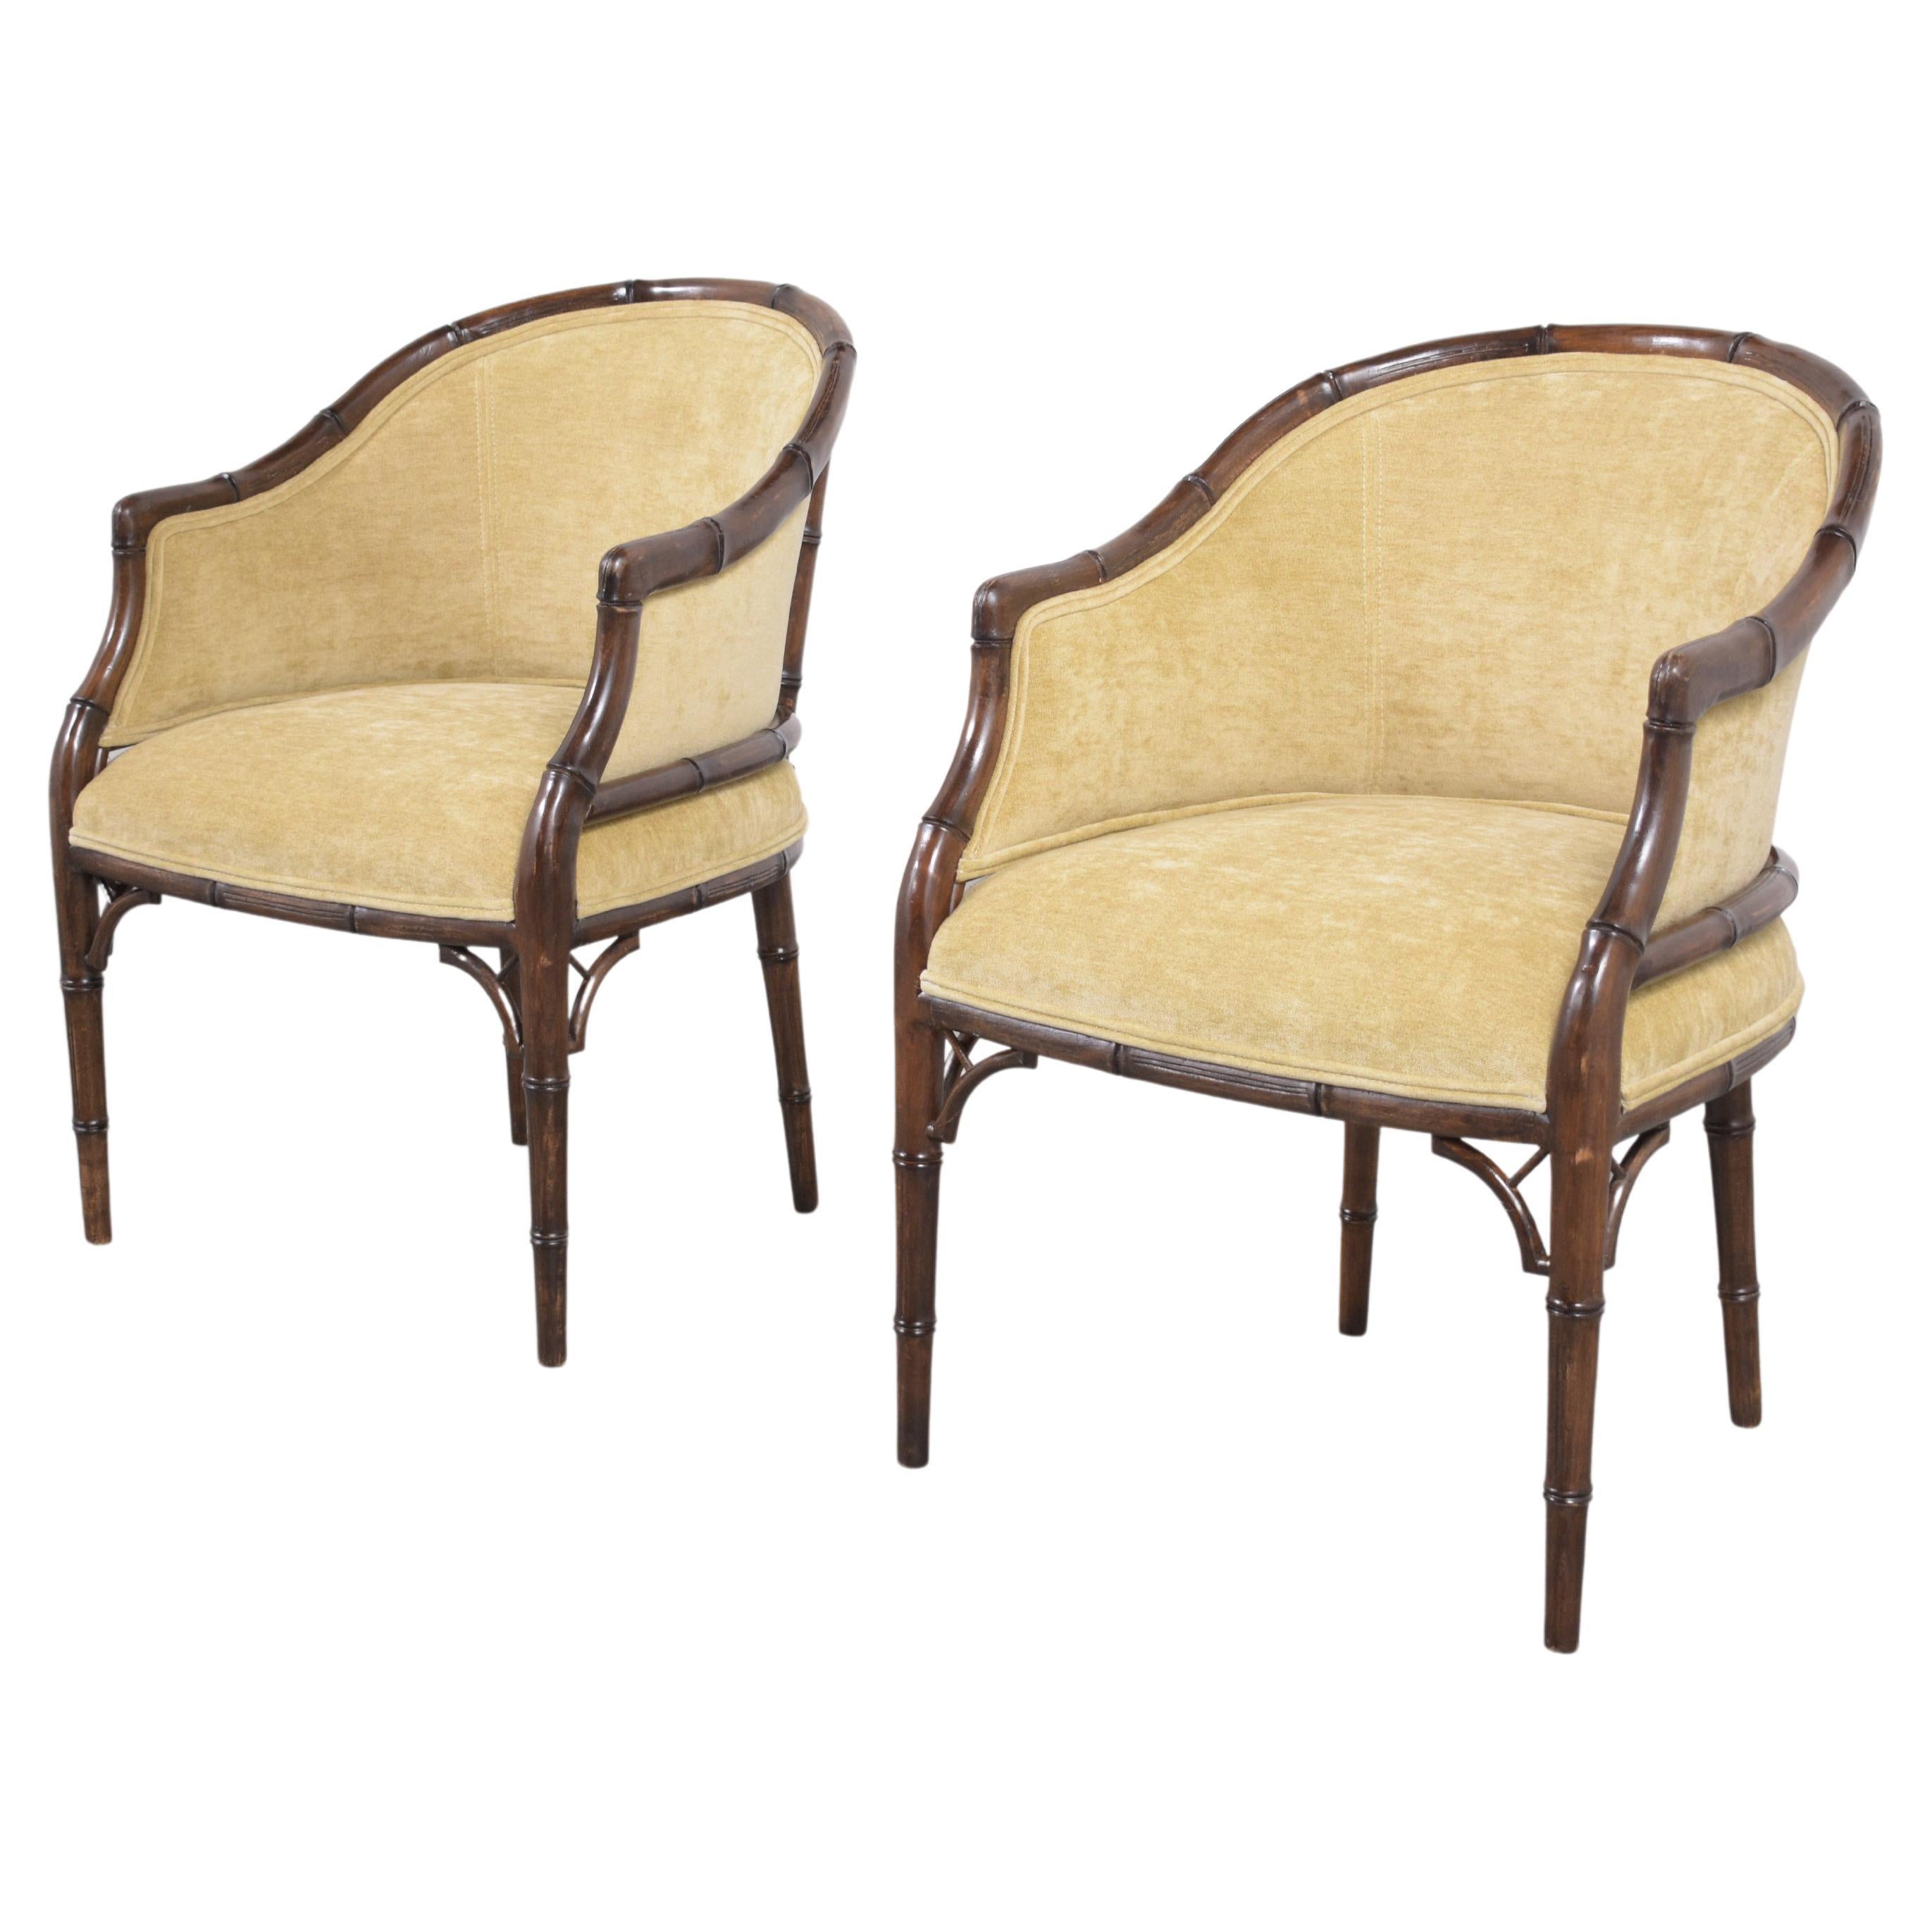 Lassen Sie sich vom Glamour der goldenen Ära verzaubern - mit unserem handverlesenen Paar Hollywood Regency-Sessel. Mit Präzision aus hochwertigem Holz gefertigt, ist jeder Stuhl ein Zeugnis für tadellose Handwerkskunst und zeitloses Design. Nach